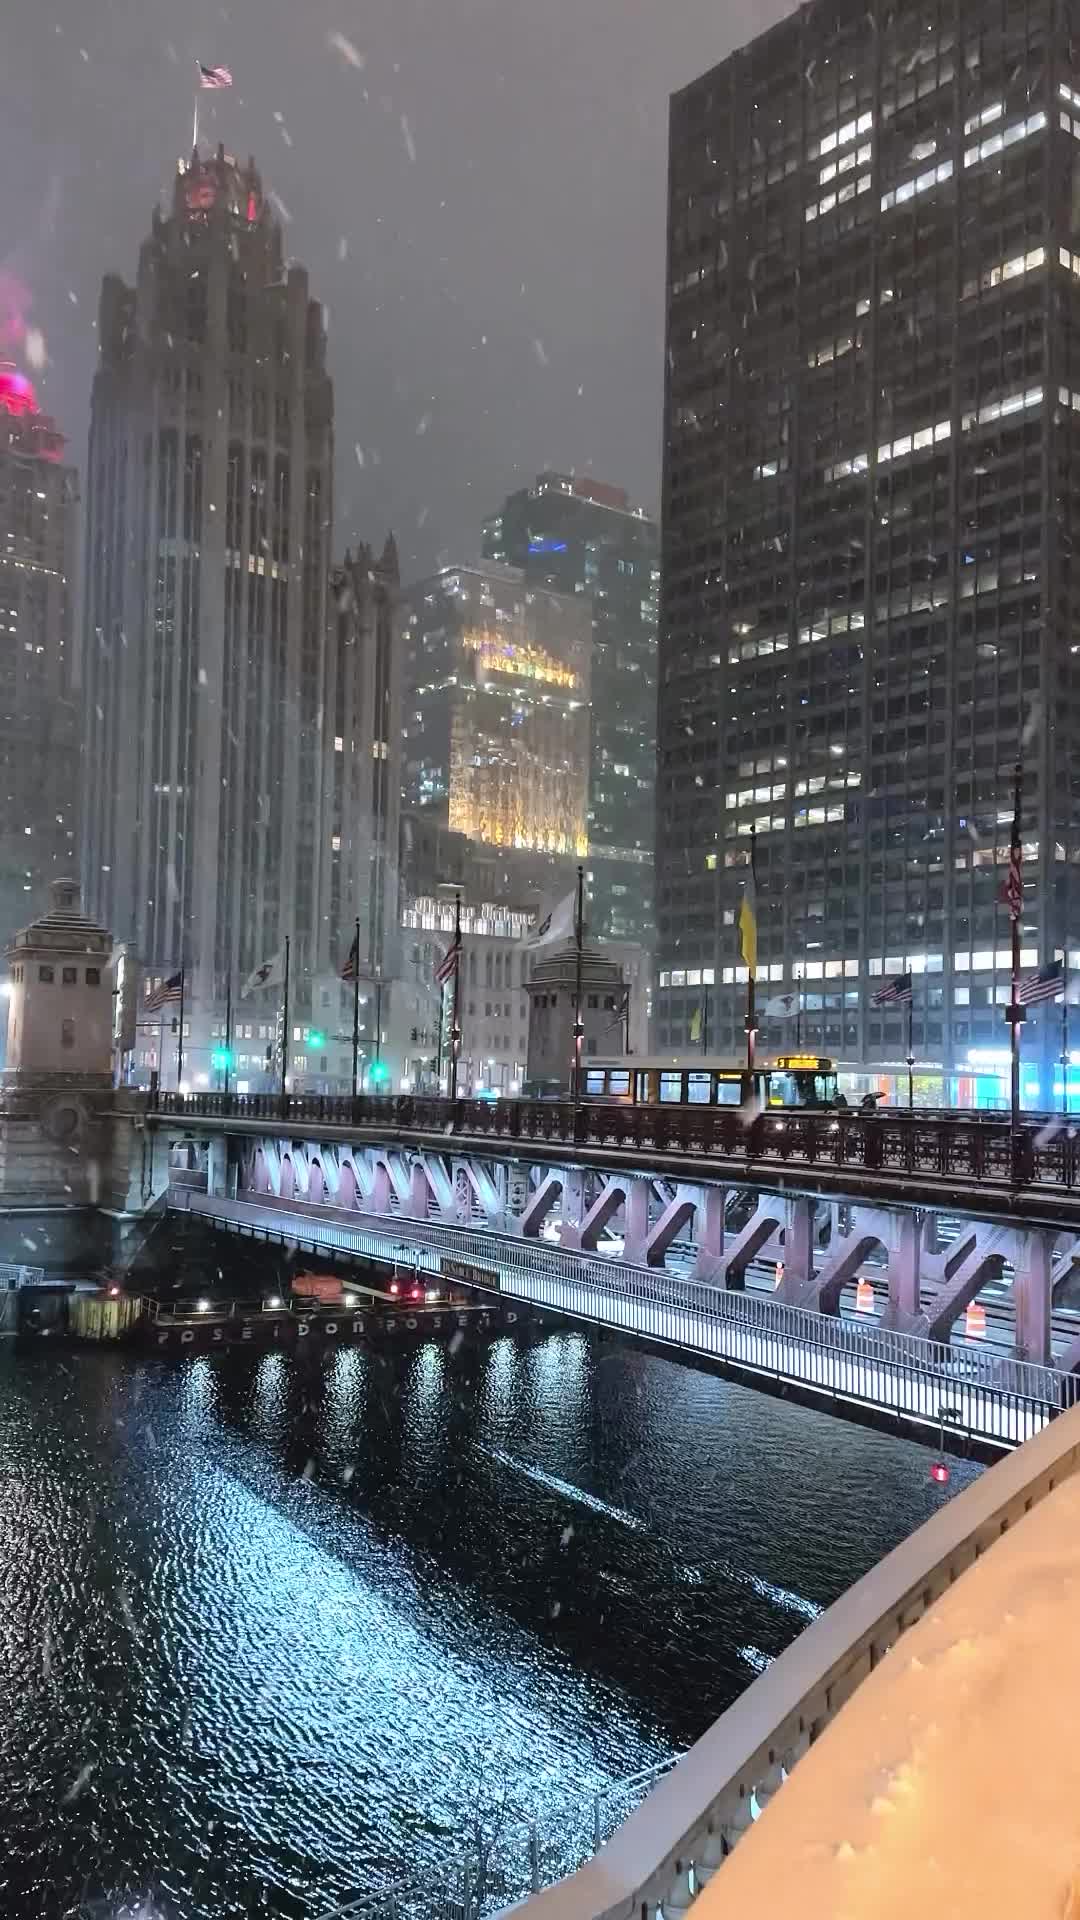 Snowfall Dream: Chicago Riverwalk & DuSable Bridge Views